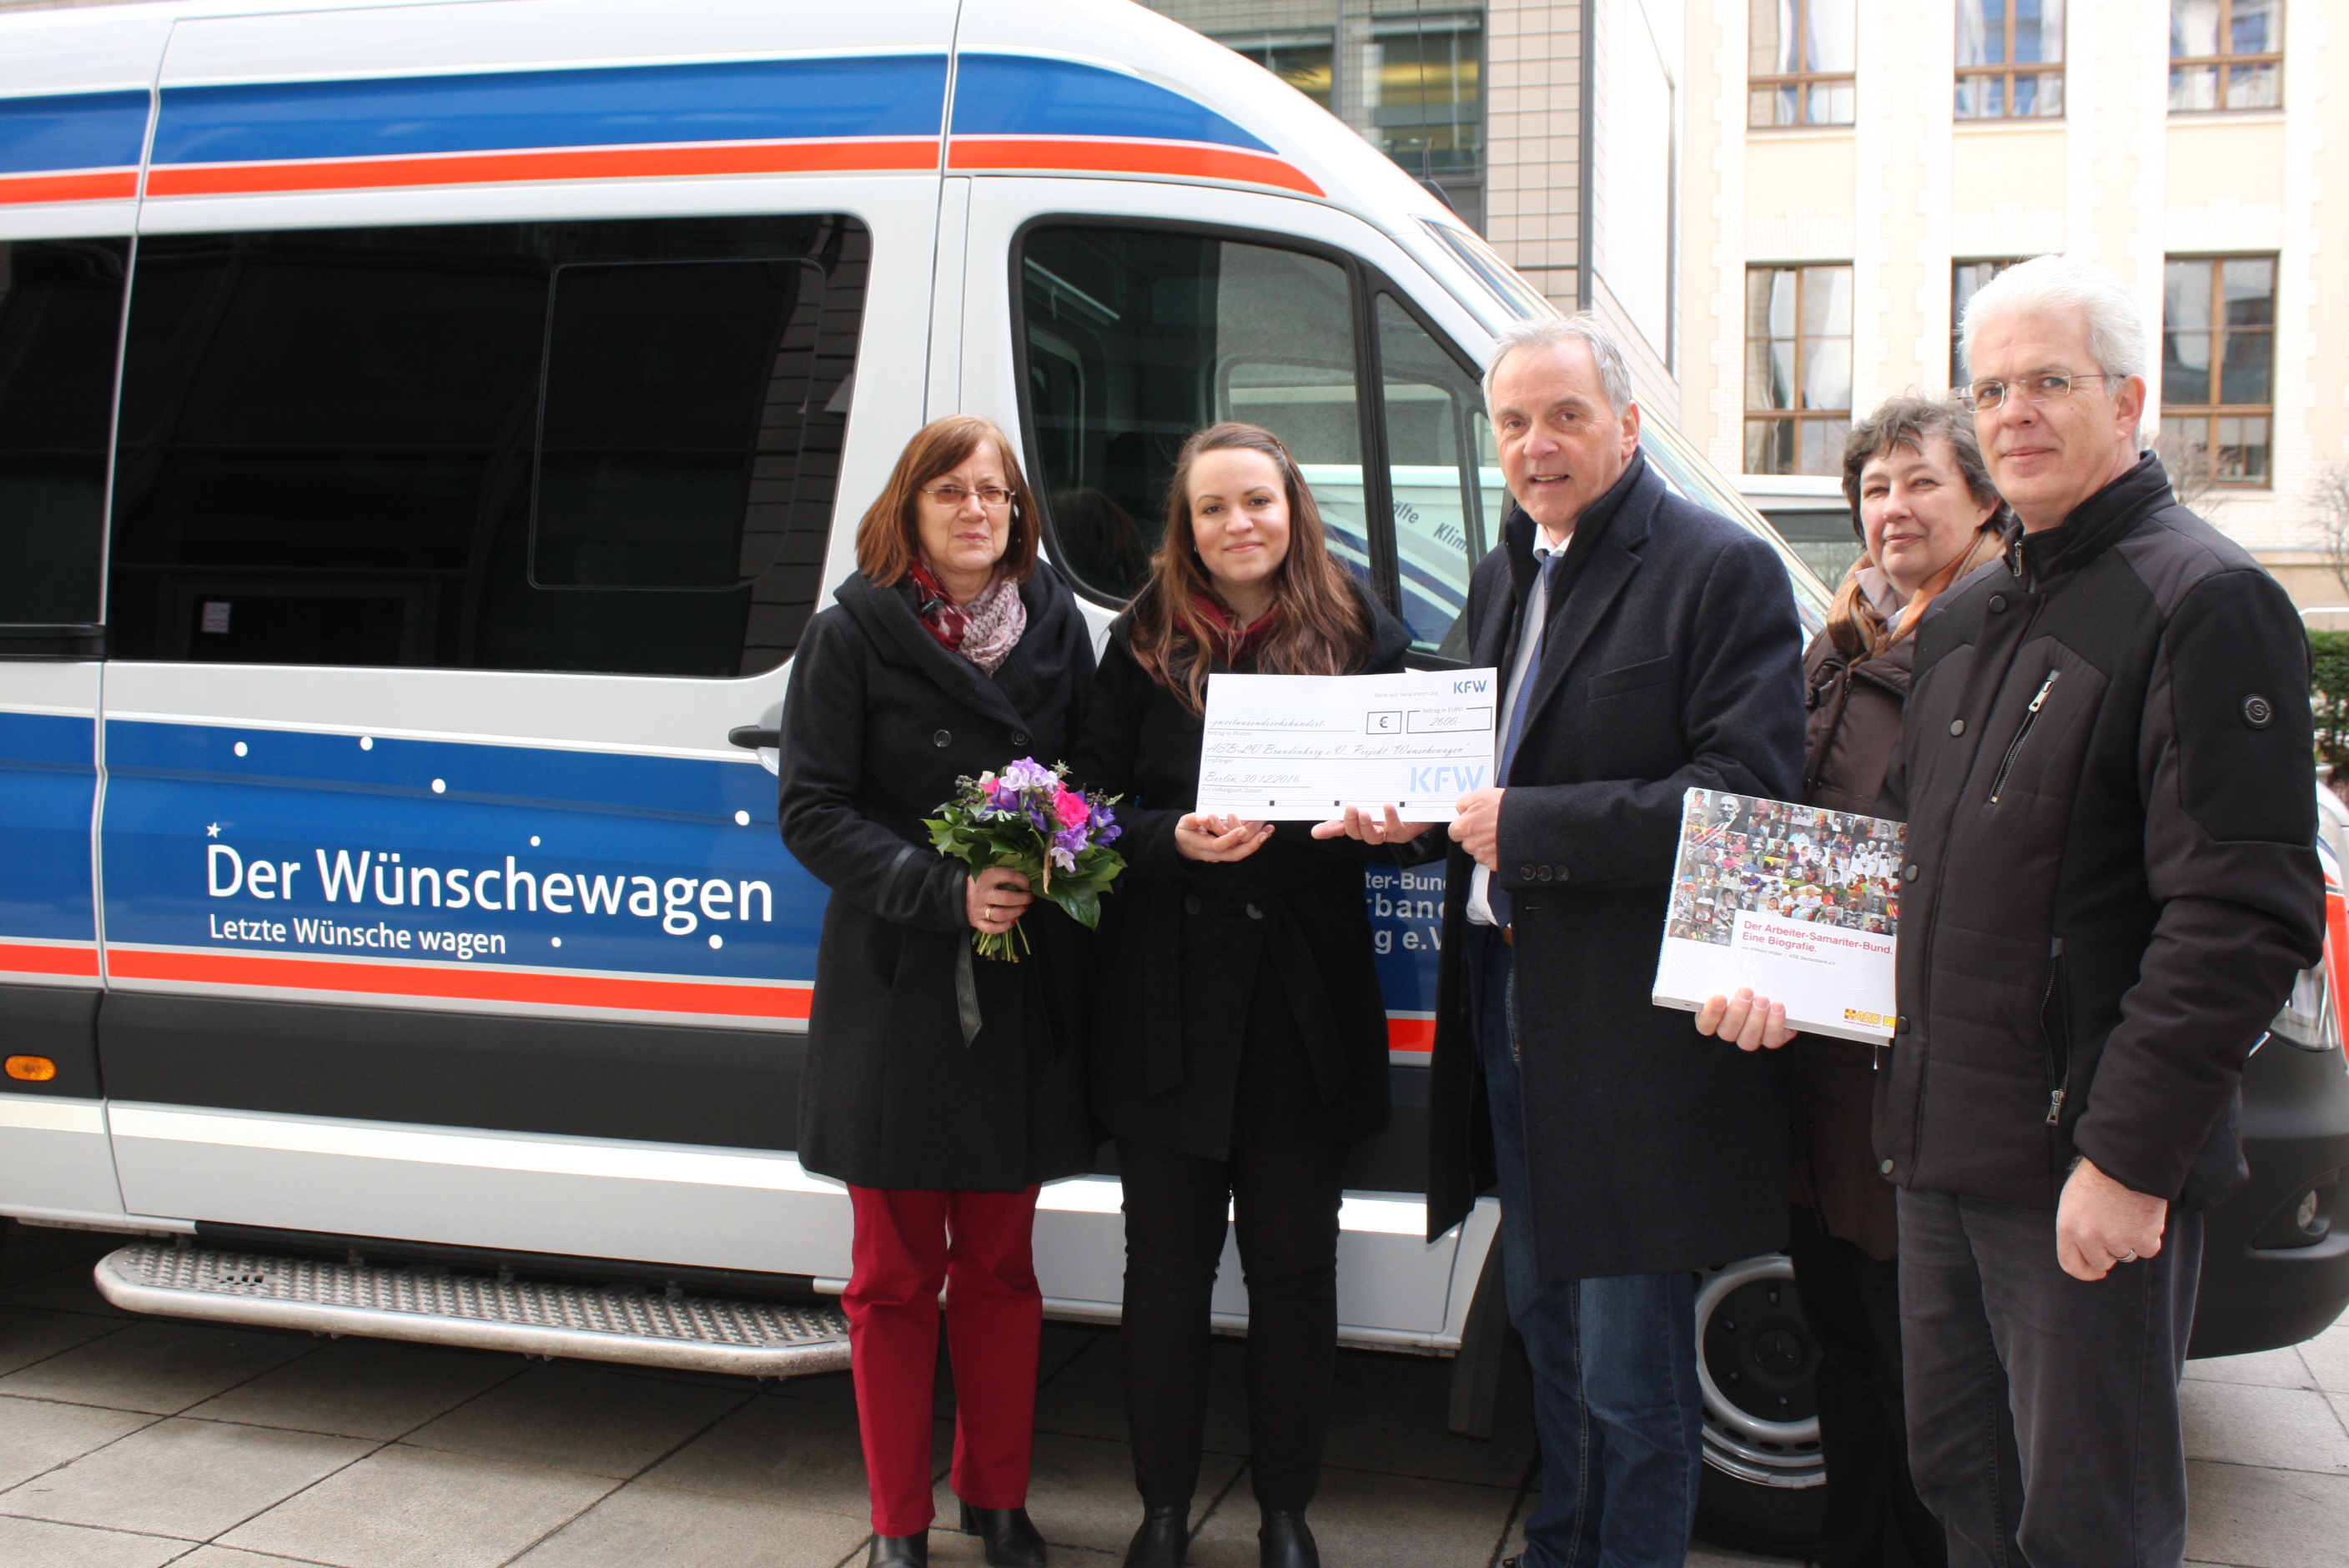 Angestellte der KfW Bank spenden 2600 Euro fuer Brandenburger Wuenschewagen!